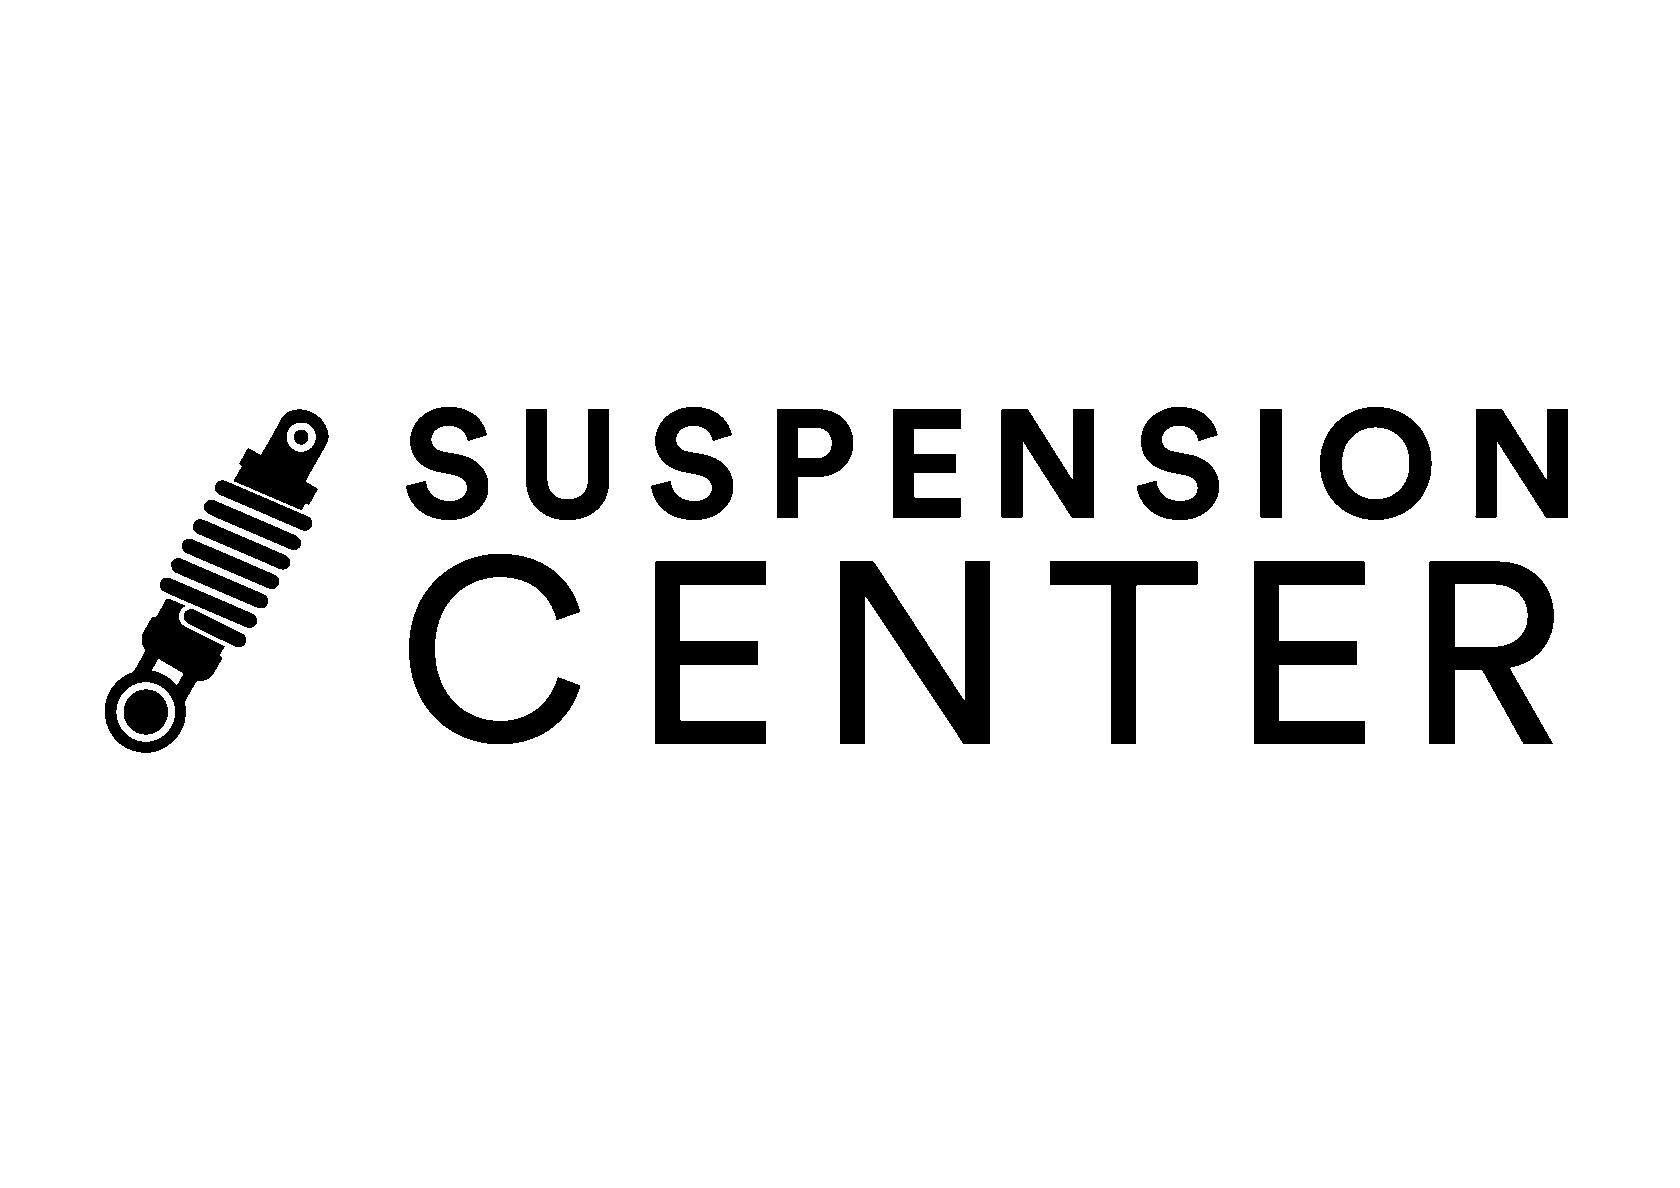 Suspension center